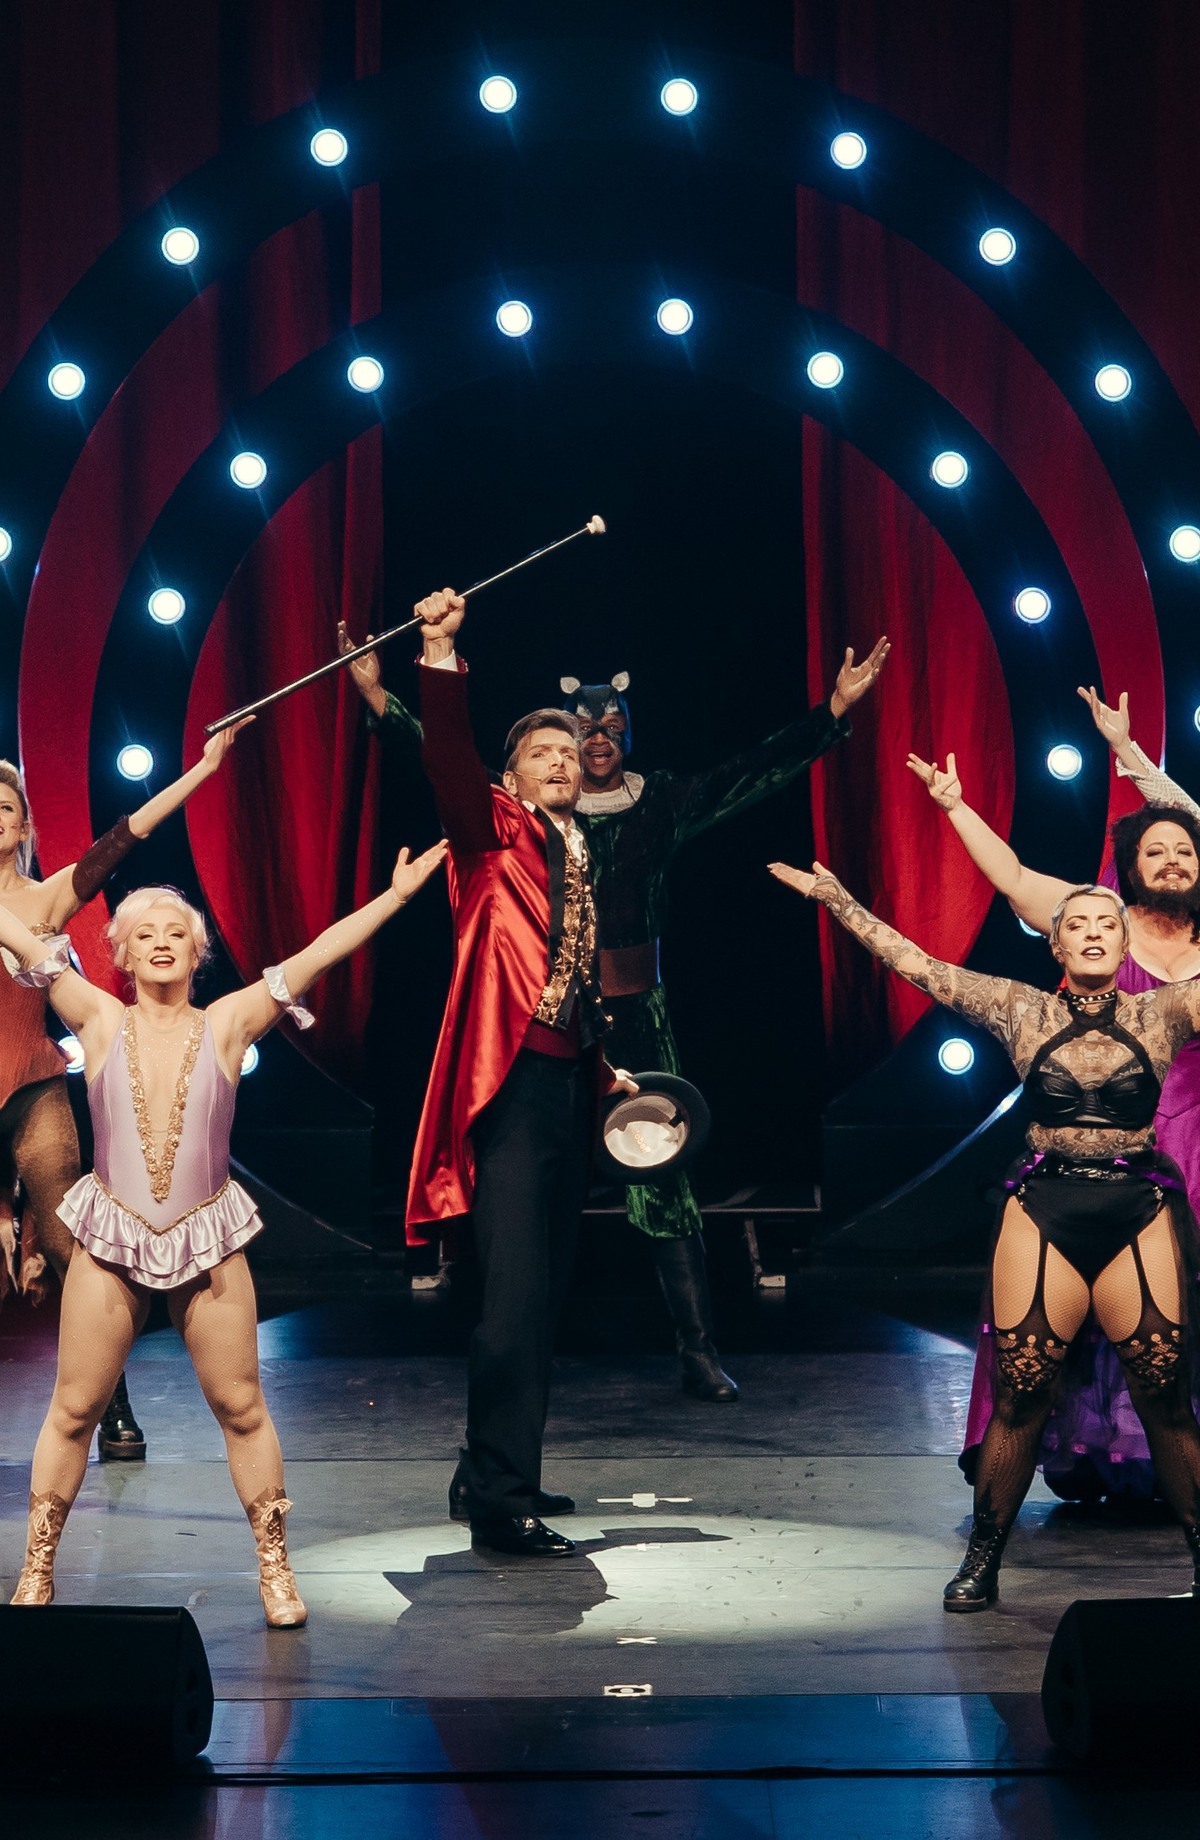 Darsteller in Kostümen auf der Bühne mit erhobenen Armen im Hintergrund leuchten Scheinwerfer vor einem roten Vorhang